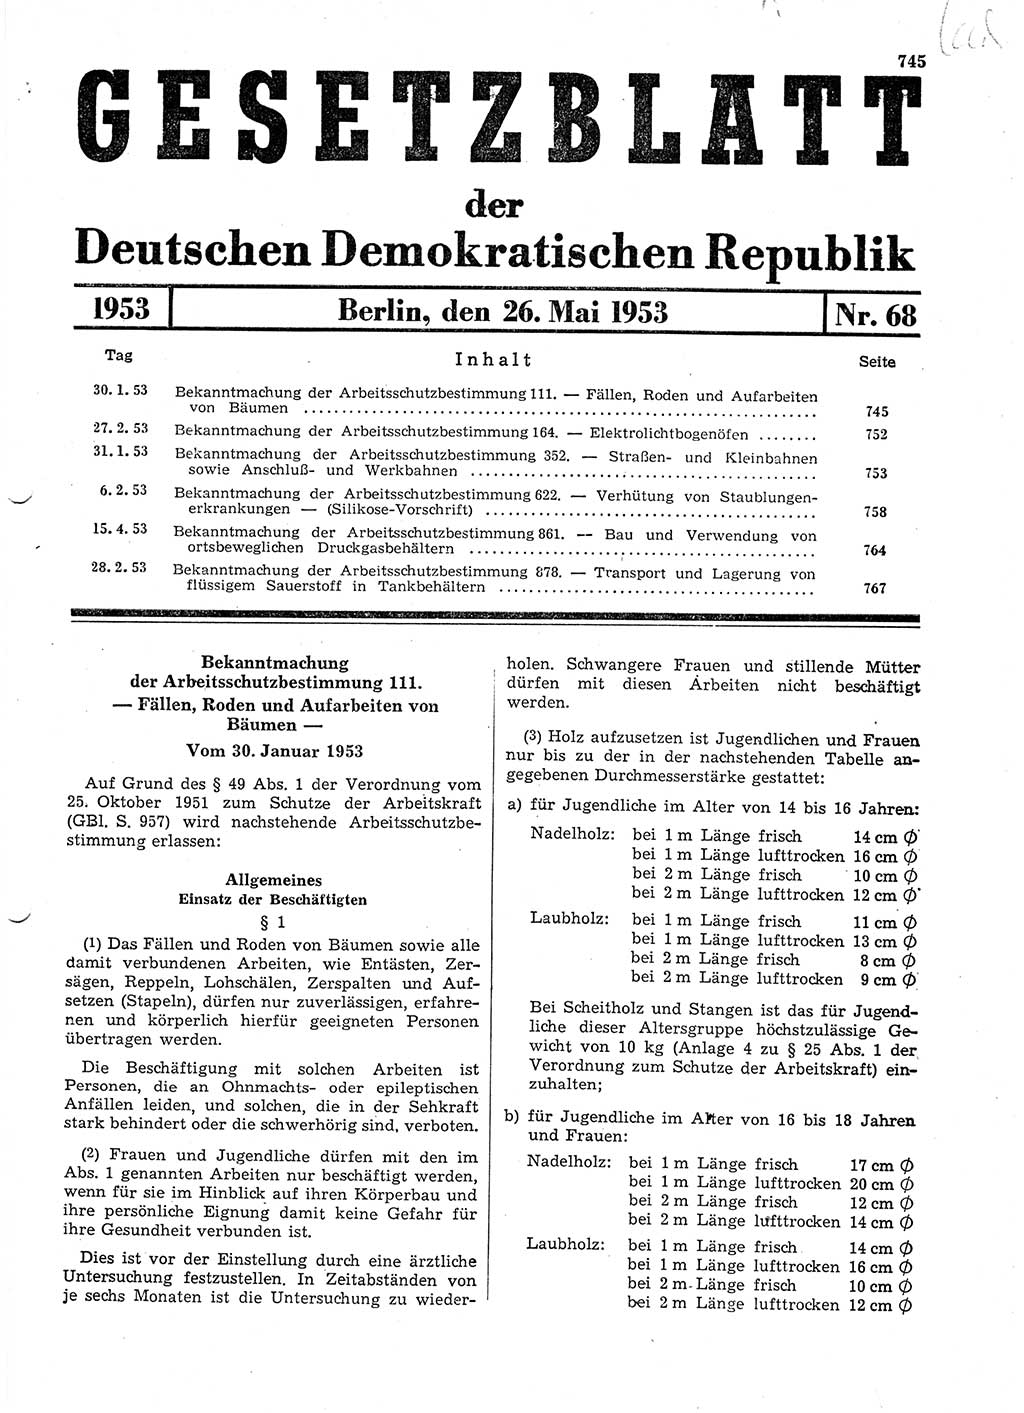 Gesetzblatt (GBl.) der Deutschen Demokratischen Republik (DDR) 1953, Seite 745 (GBl. DDR 1953, S. 745)